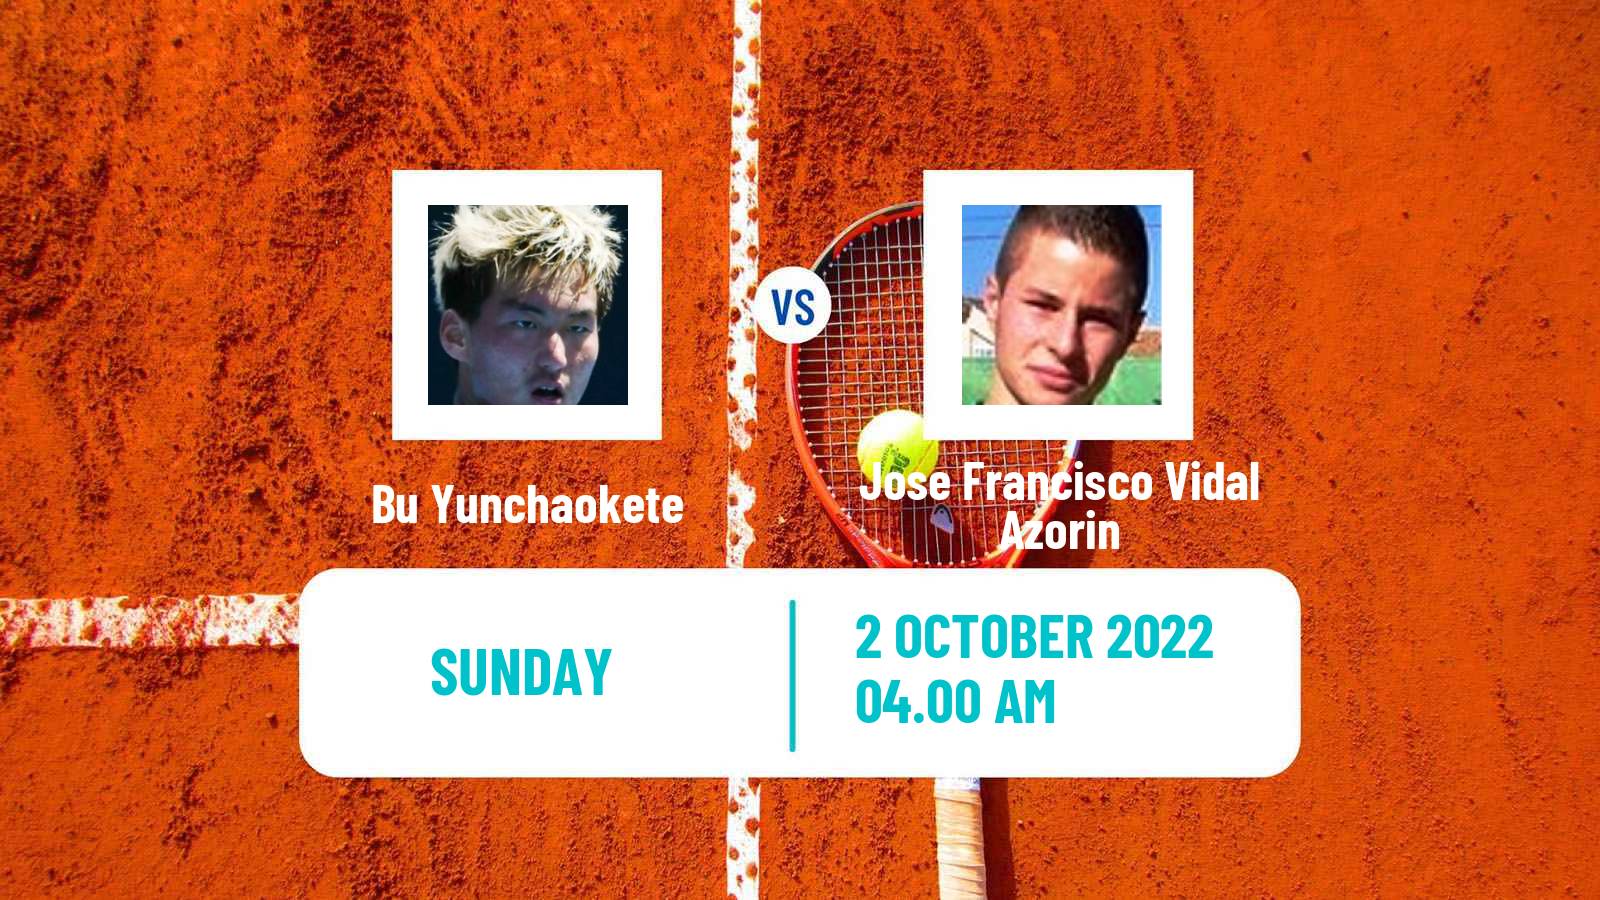 Tennis ATP Challenger Bu Yunchaokete - Jose Francisco Vidal Azorin